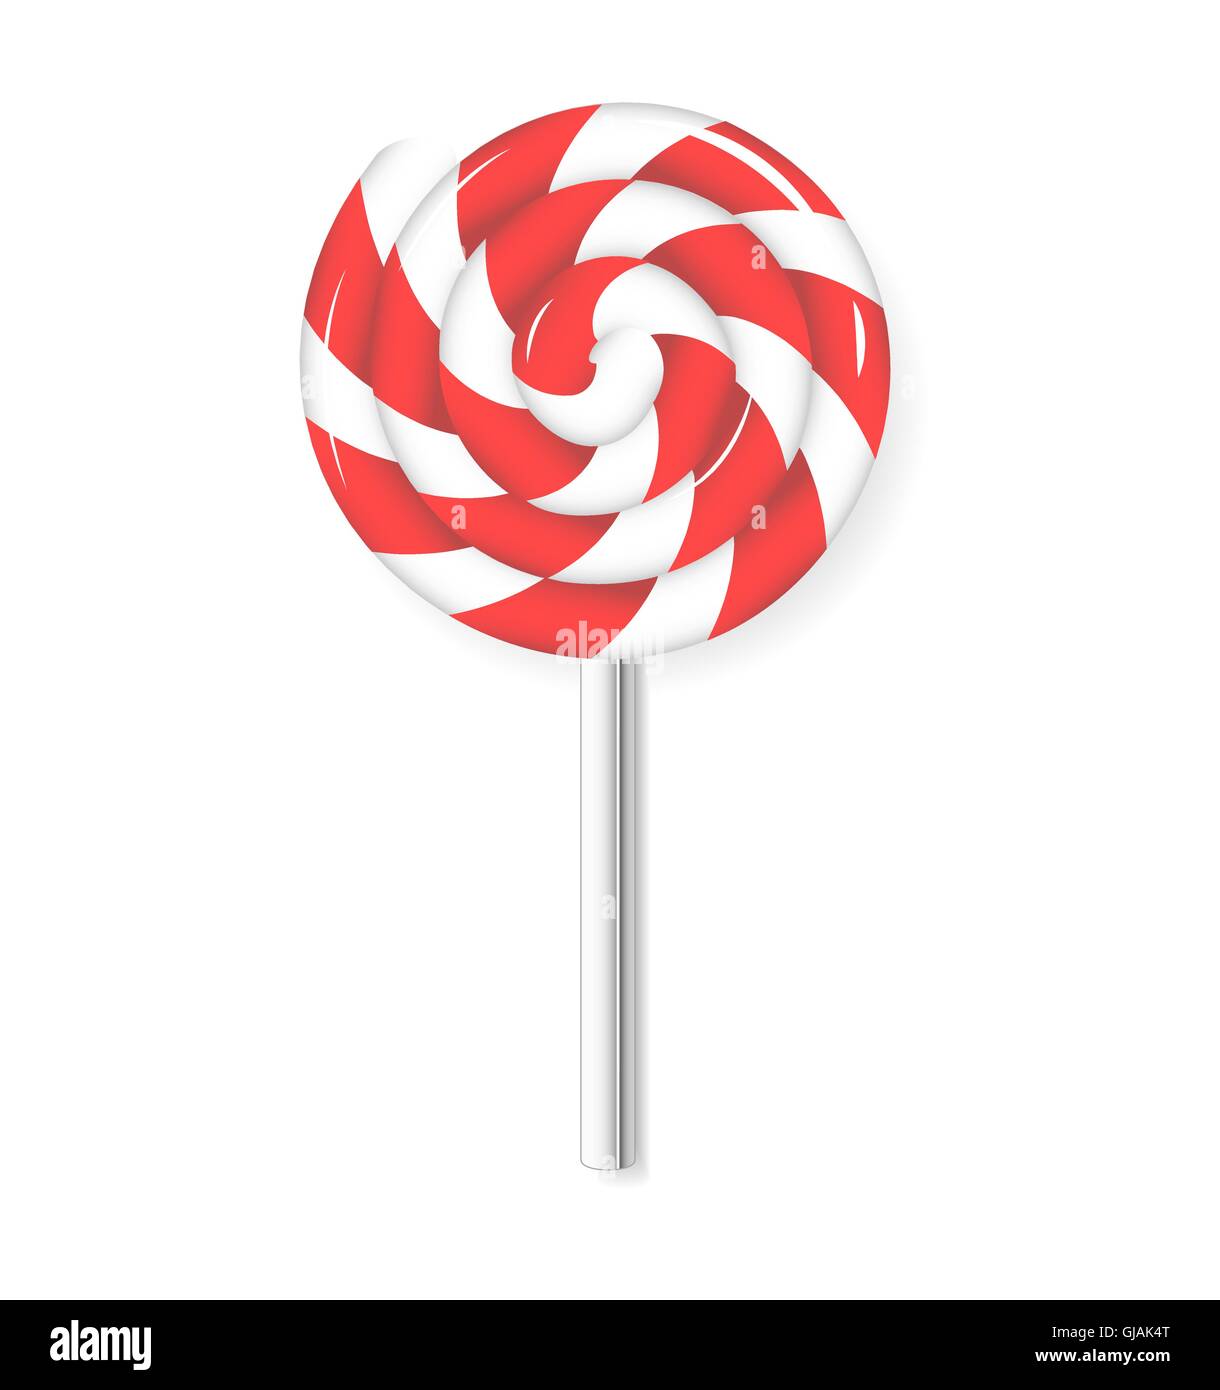 Wirbel-Lutscher Süßigkeit. Rote und weiße Lolly Süßigkeiten. Isolierte  Darstellung. Vektor Stock-Vektorgrafik - Alamy